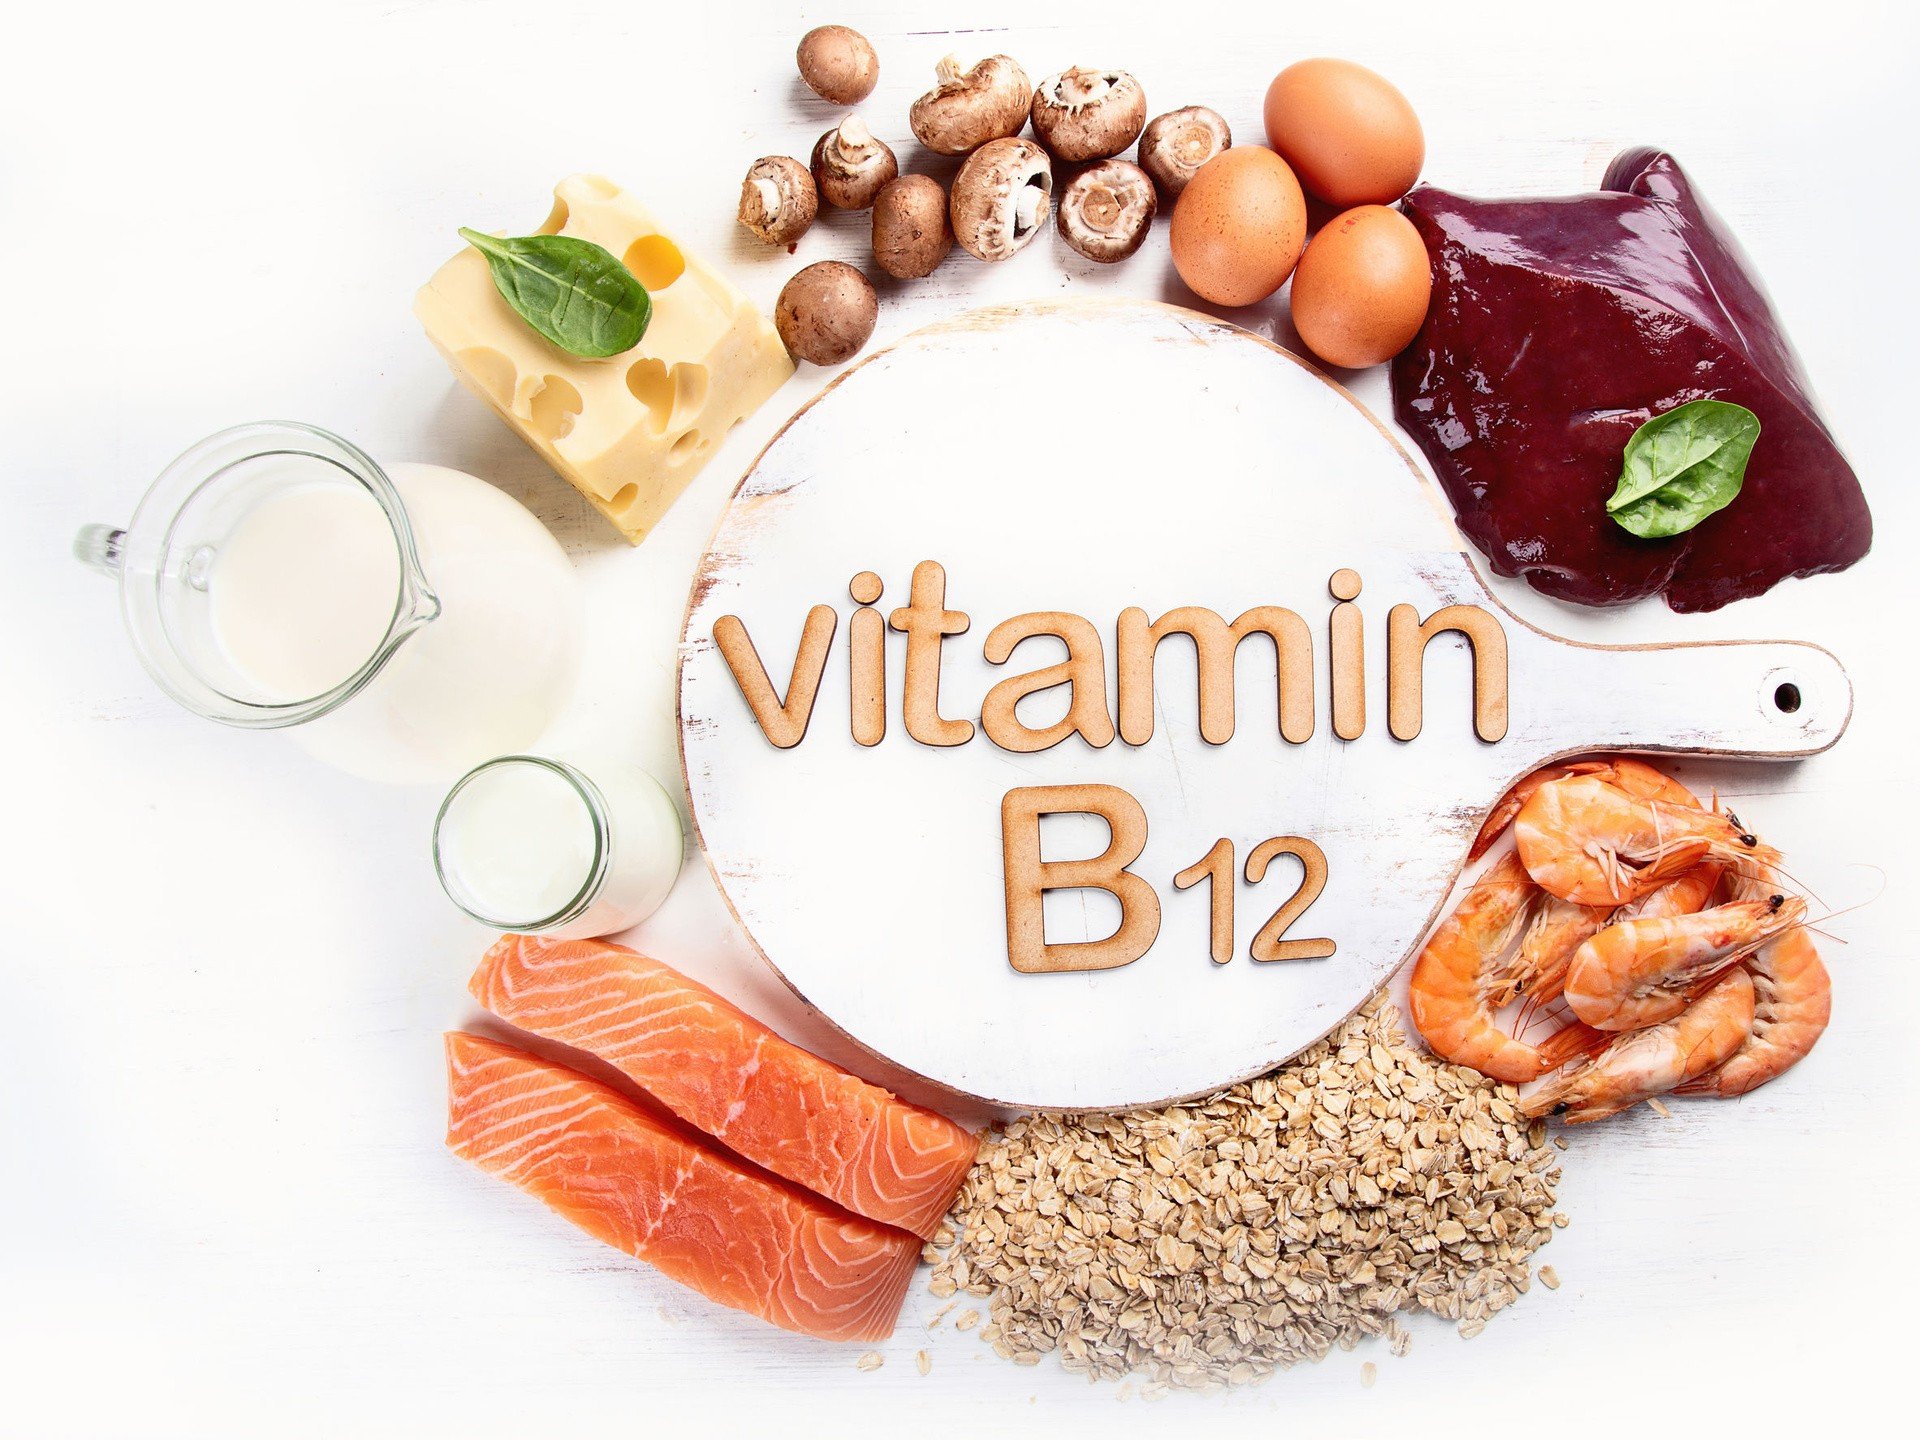 Witamina B12 wspiera układ nerwowy. Sprawdź, jakie są jej źródła pokarmowe  i zapotrzebowanie oraz poznaj objawy niedoboru kobalaminy | Strona Zdrowia